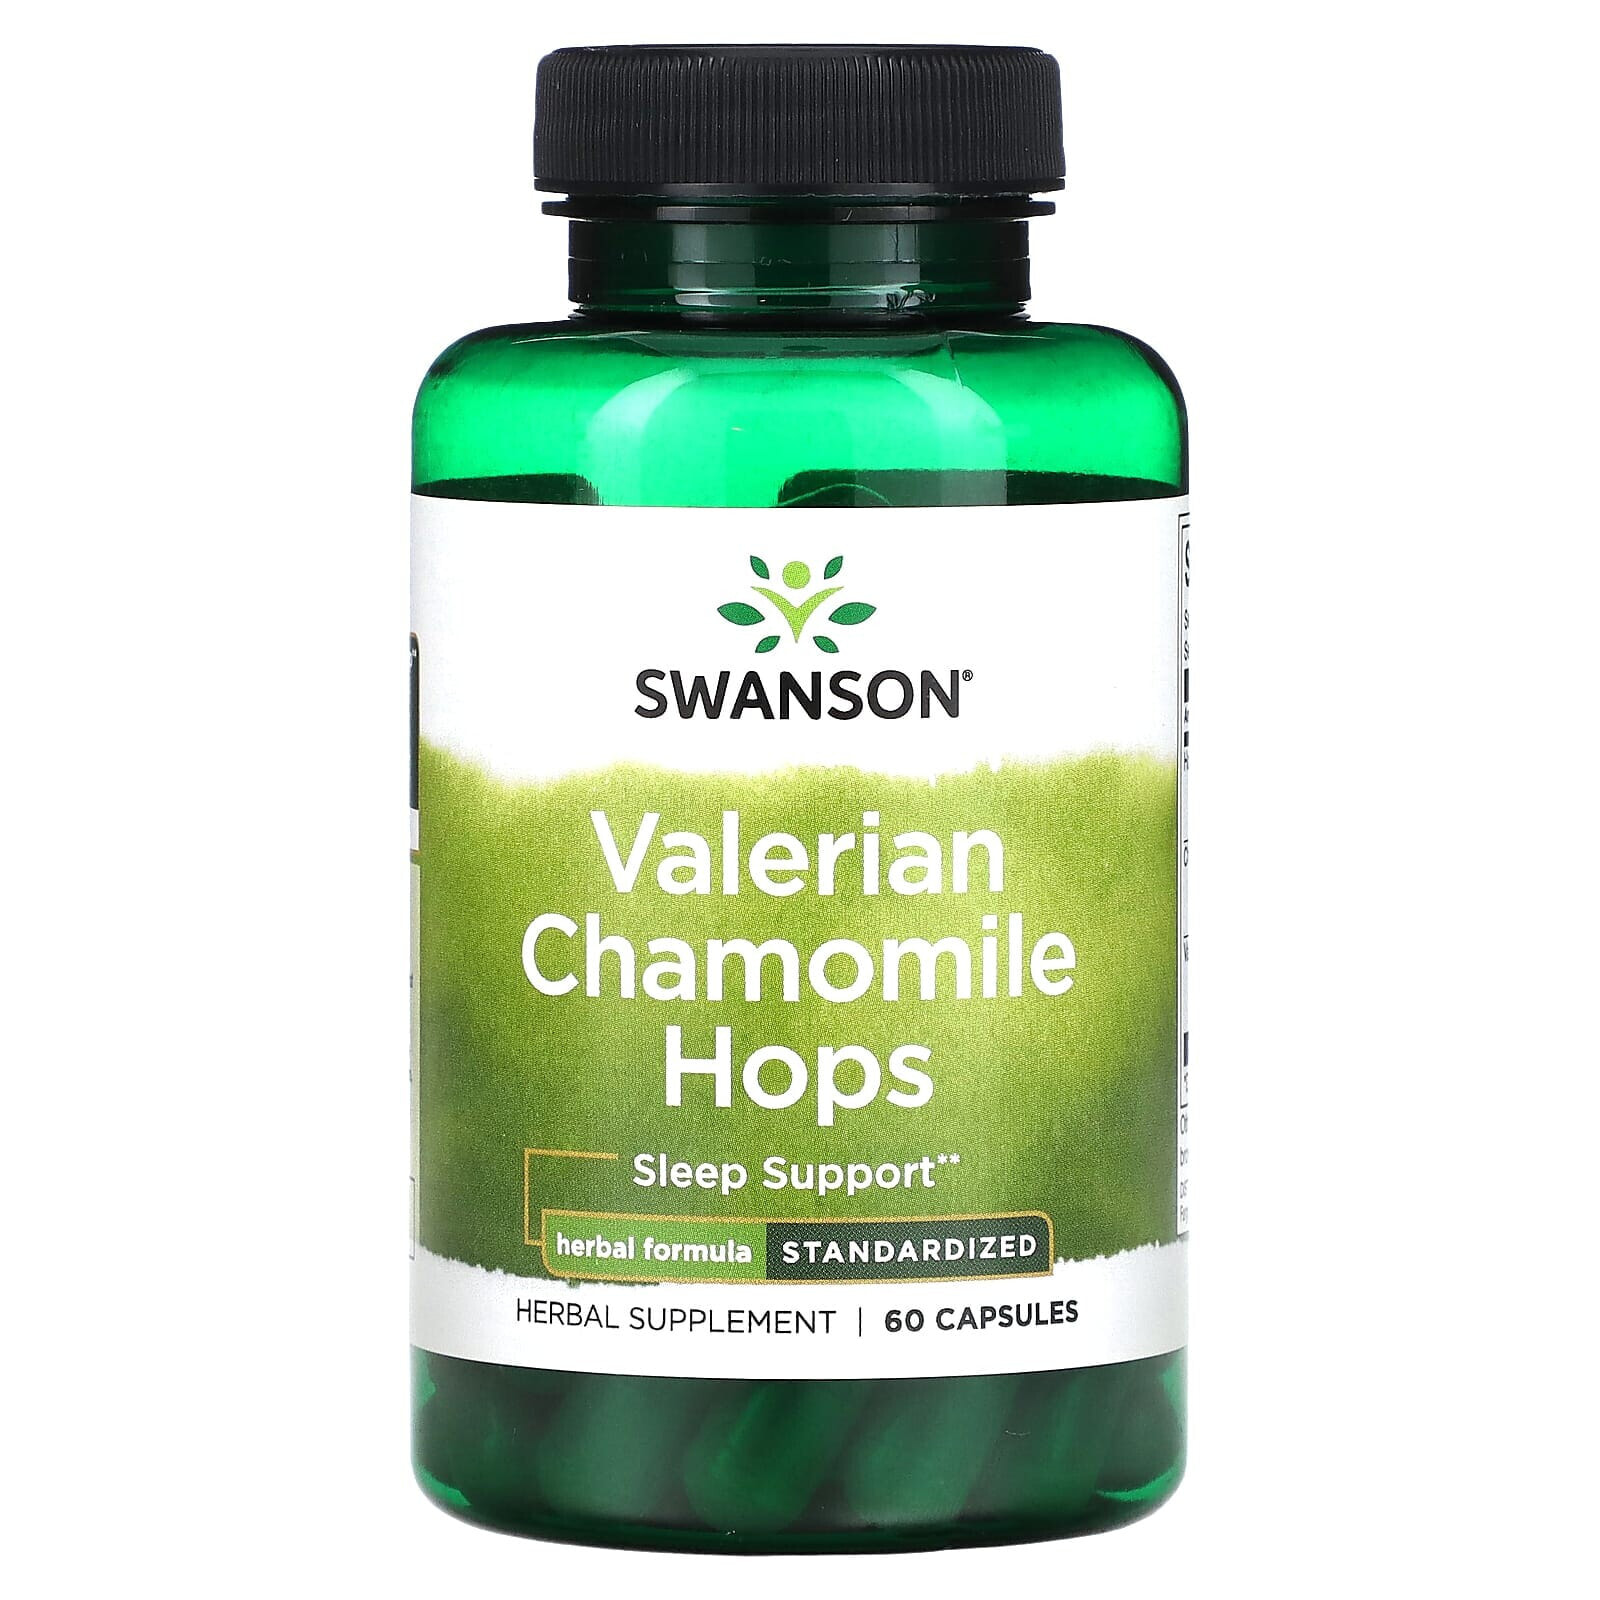 Valerian Chamomile Hops, Standardized, 60 Capsules